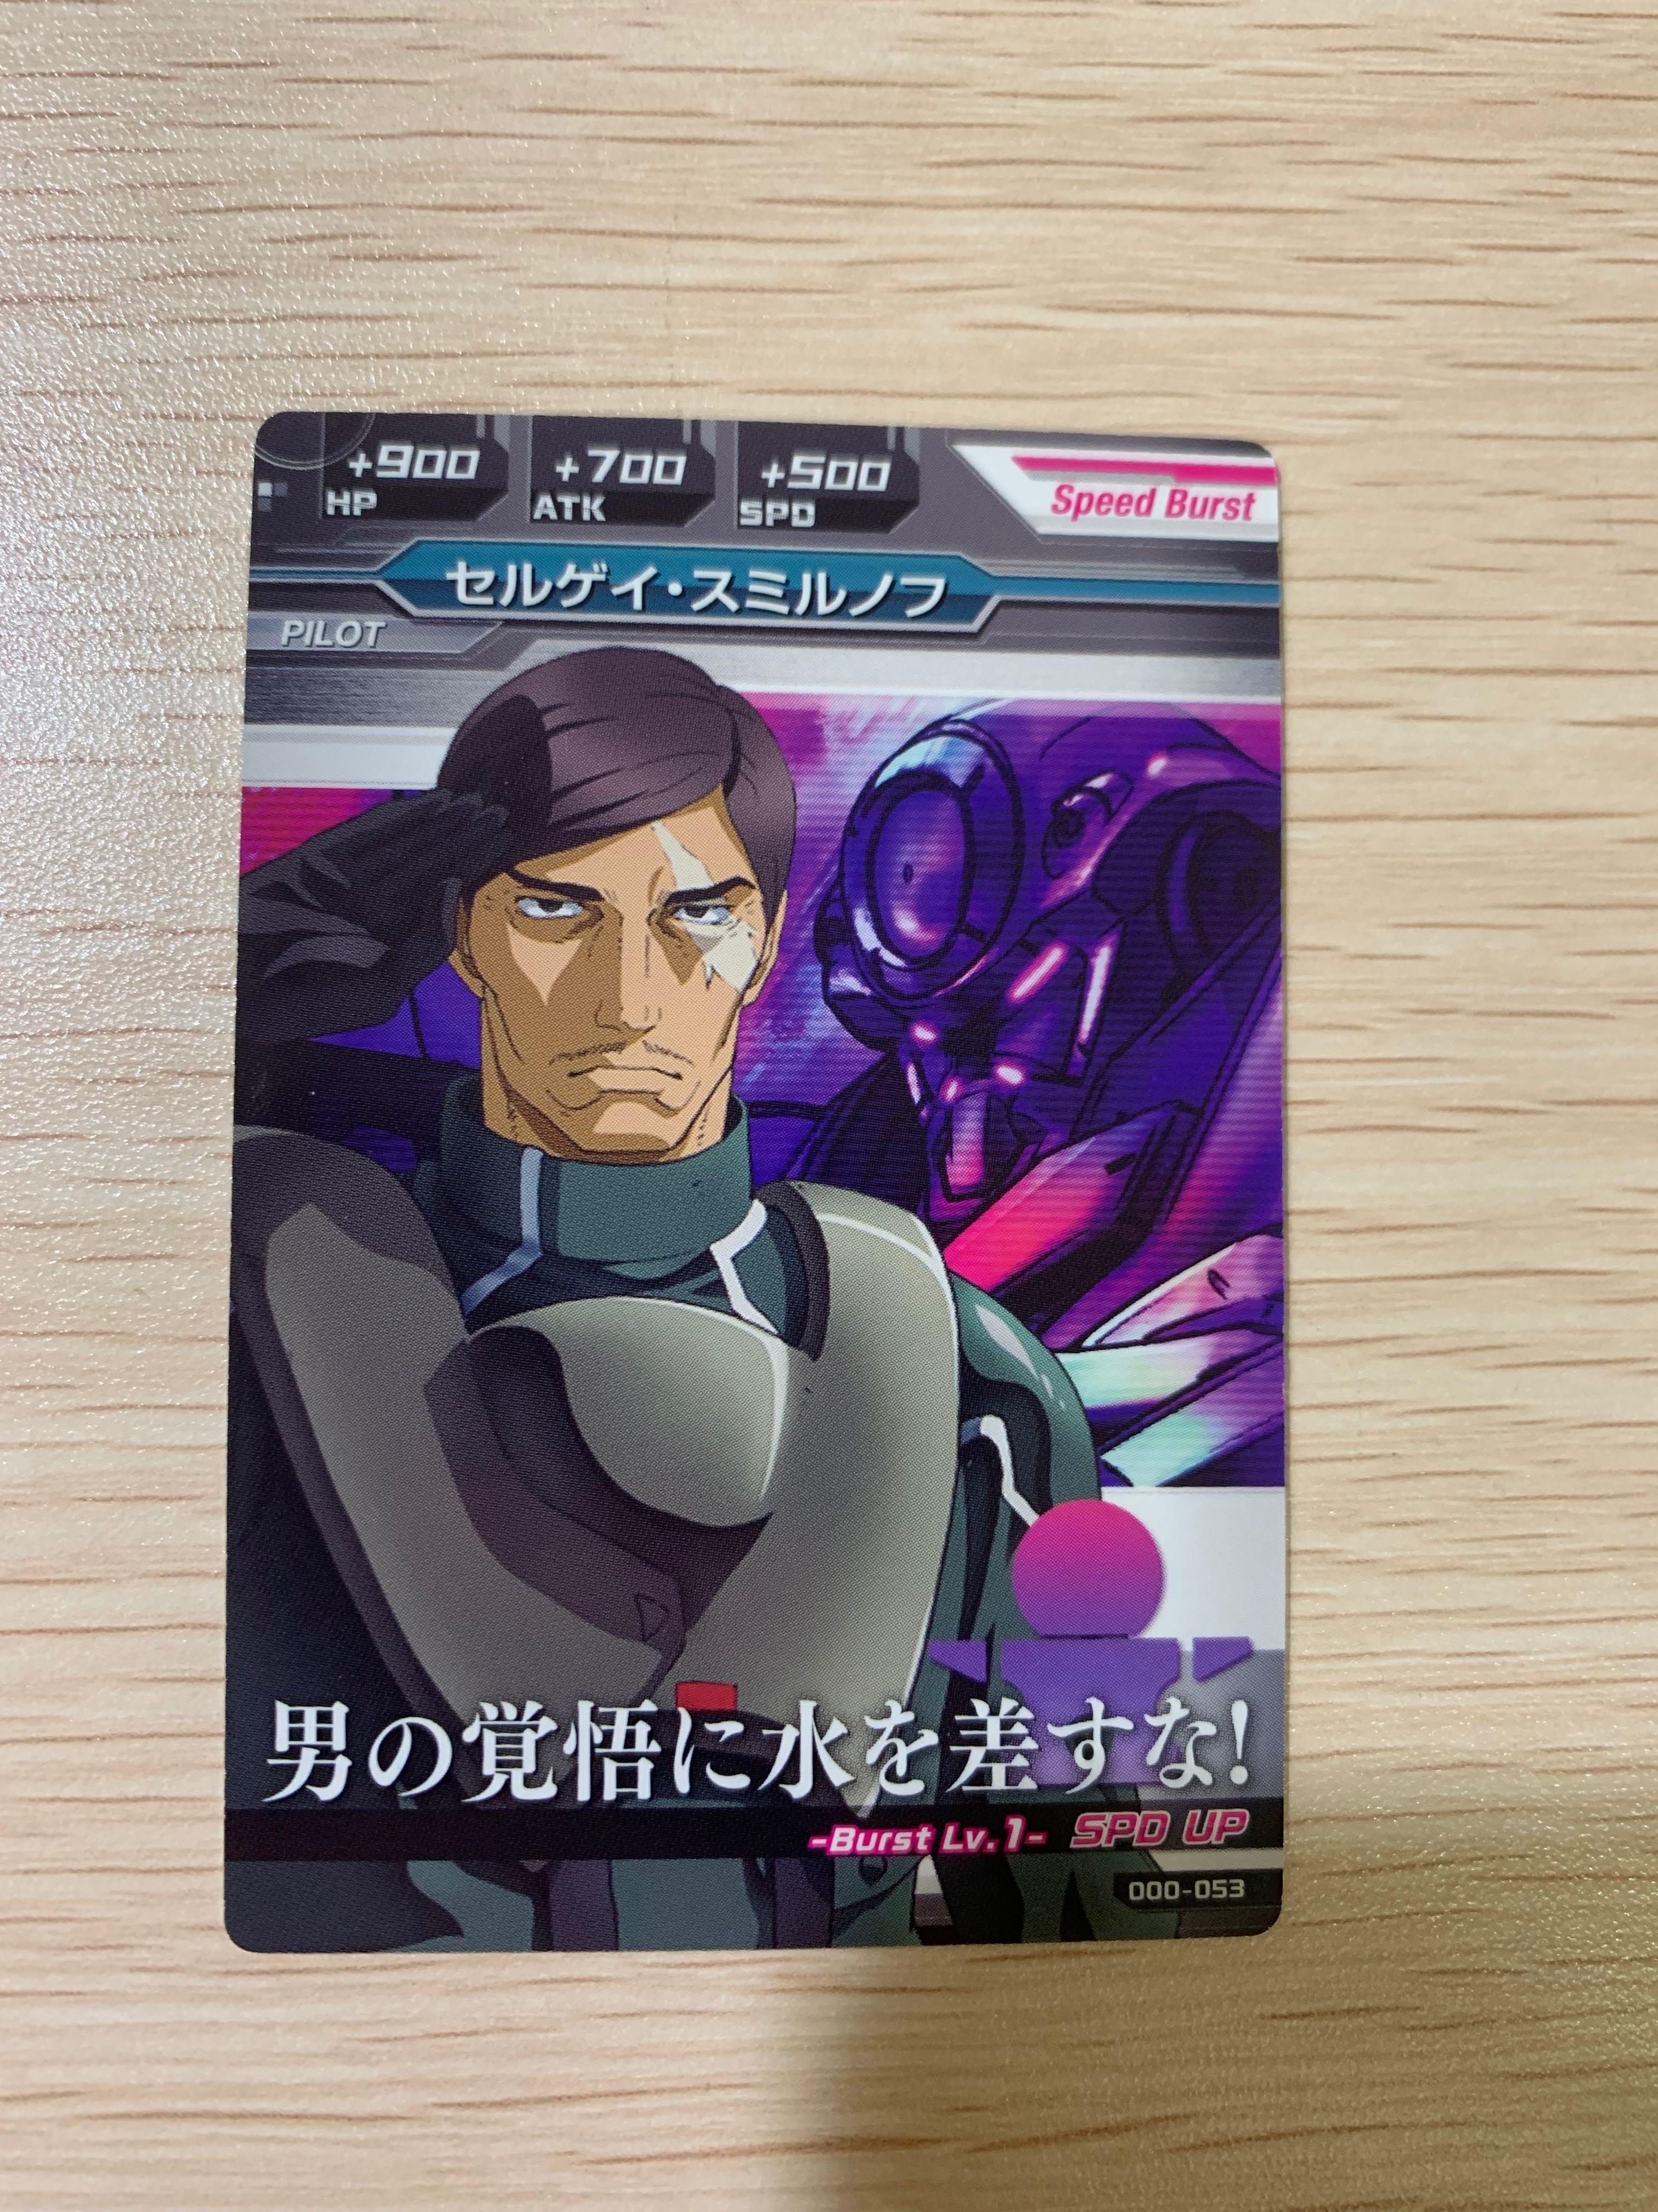 高達00 謝爾蓋 斯米爾諾夫大佐上校人類革新連盟sergei Smirnov Gundam Tryage Try Age Collection Card 000 053 興趣及遊戲 玩具 遊戲類 Carousell